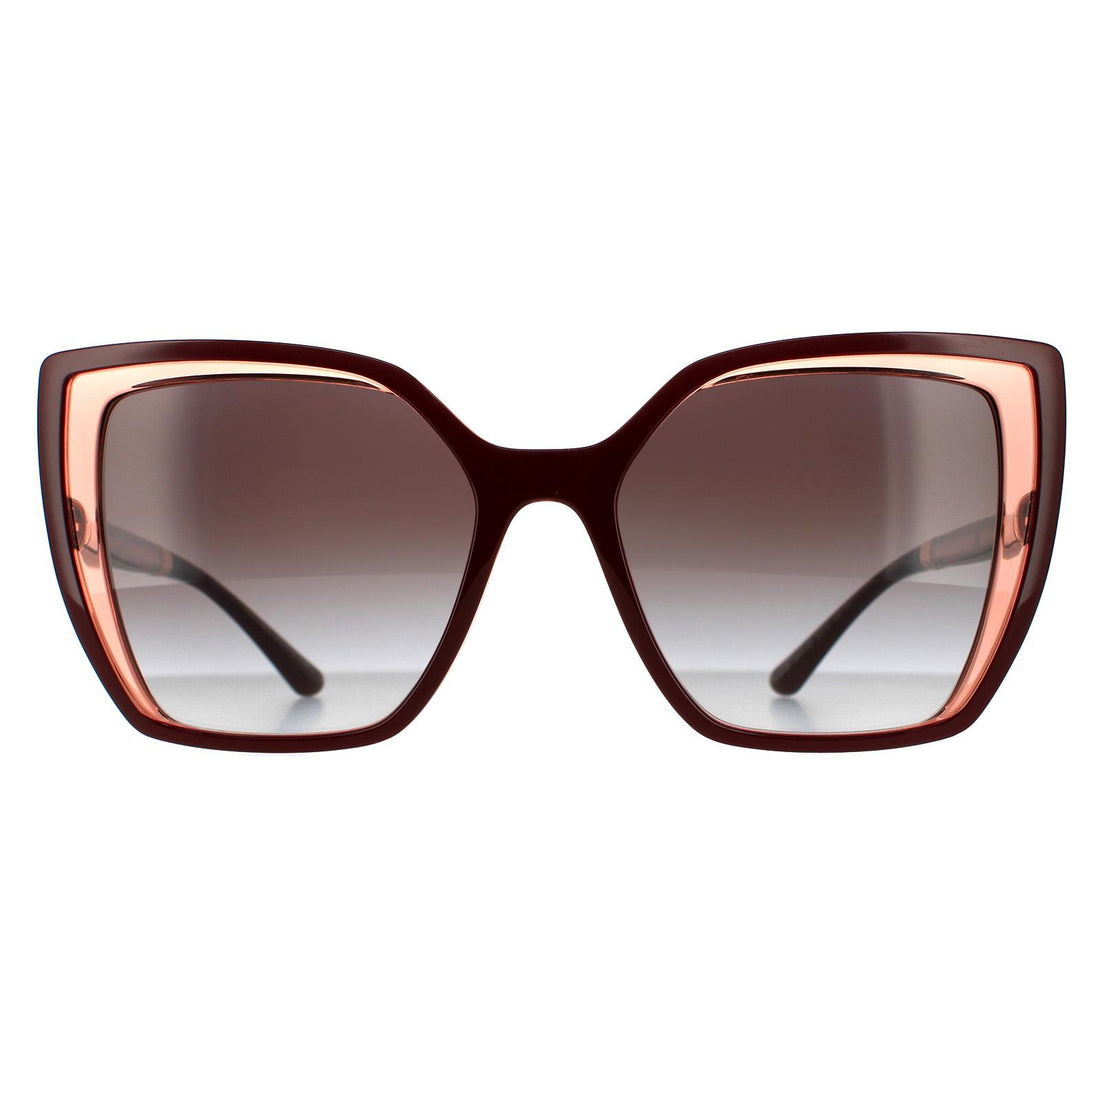 Dolce & Gabbana DG6138 Sunglasses Bordeaux on Transparent / Grey Gradient